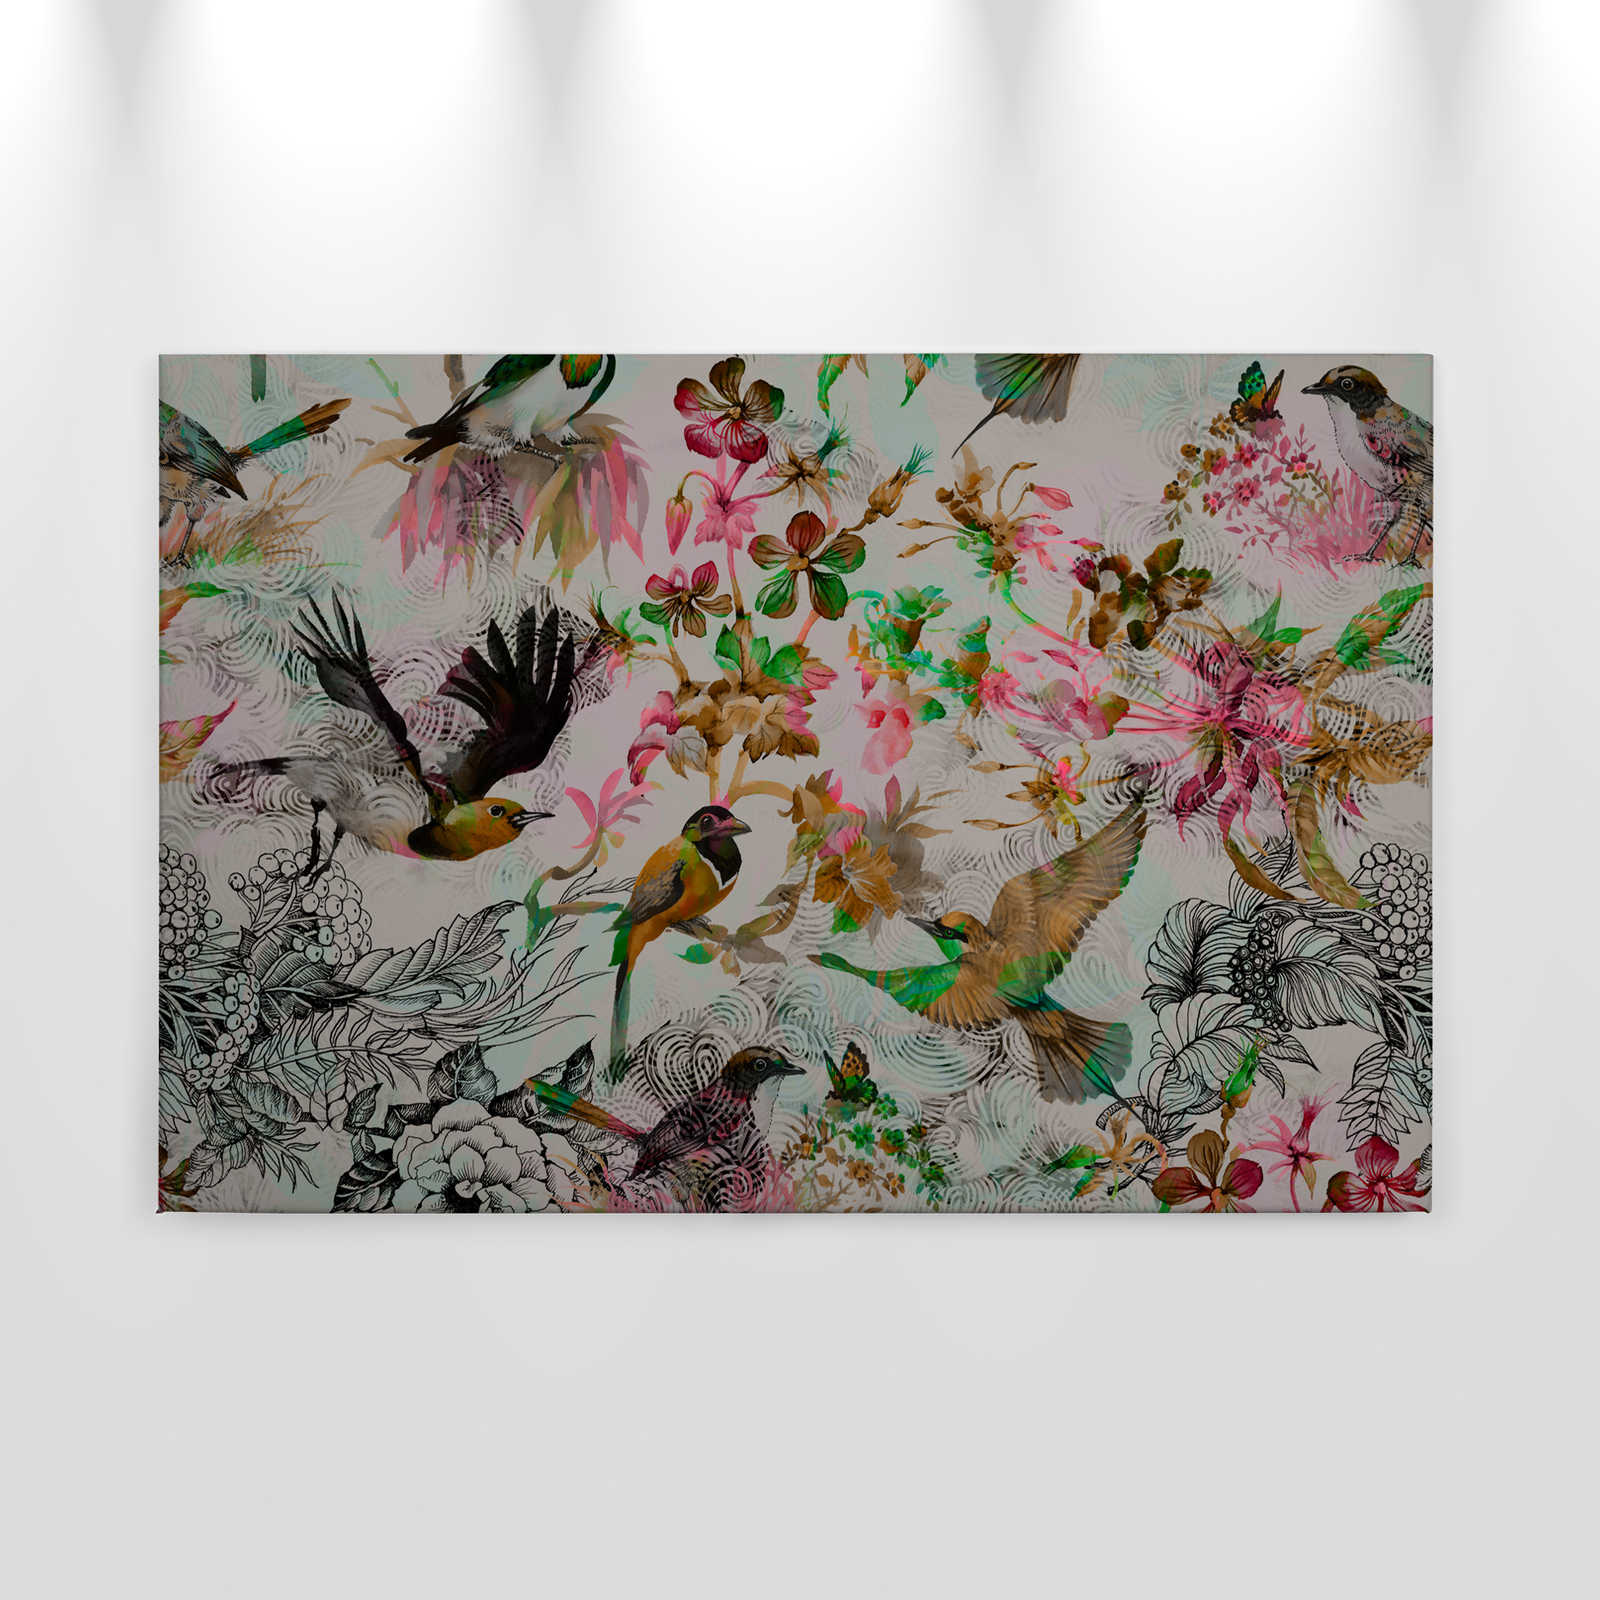             Quadro su tela Uccelli e fiori stile collage - 0,90 m x 0,60 m
        